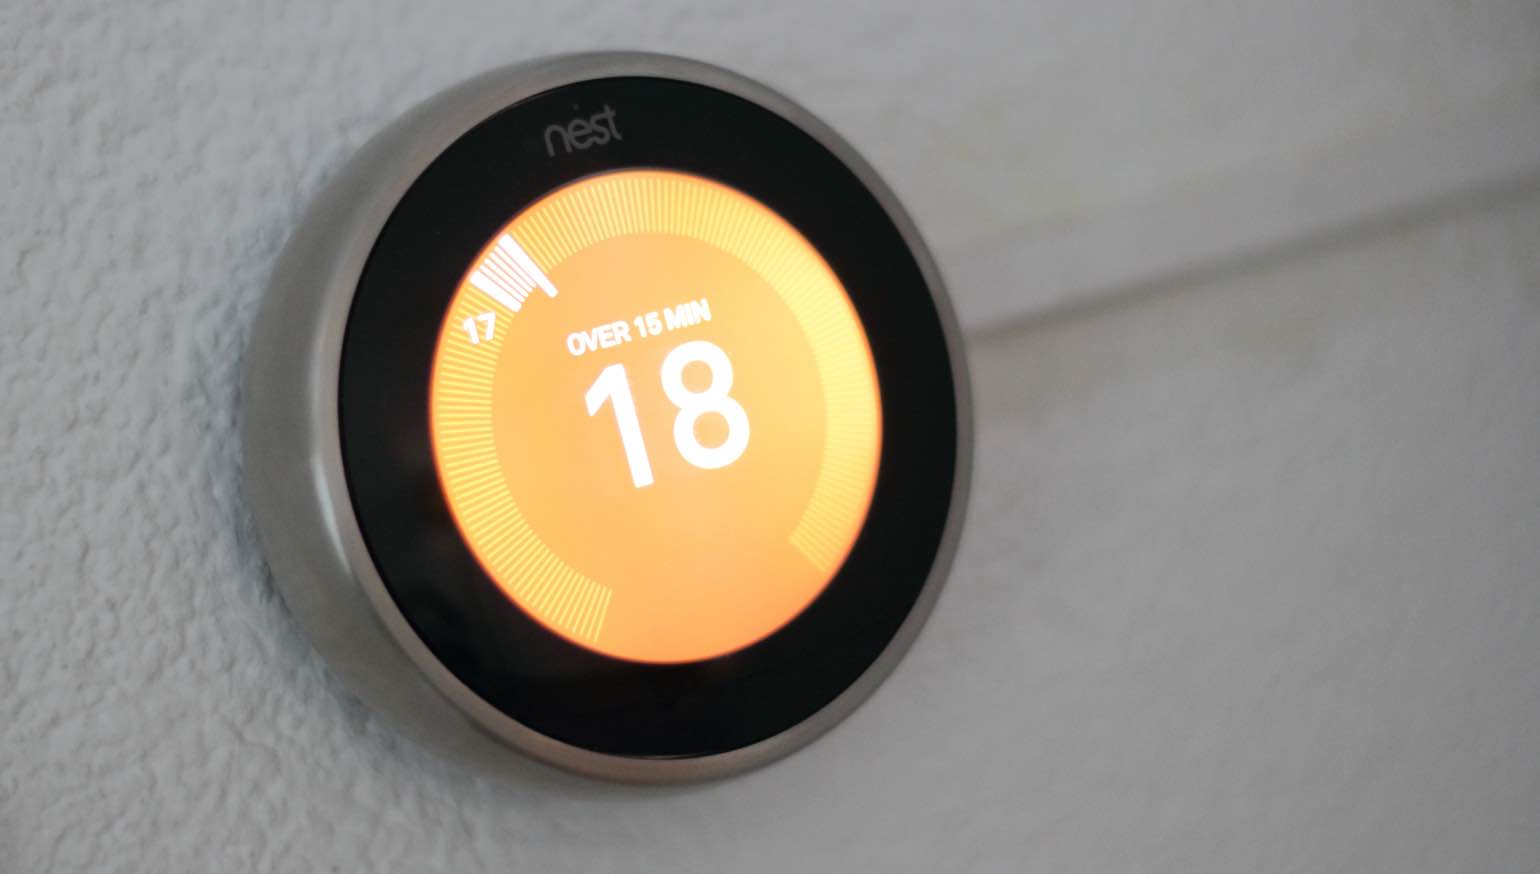 kondigt officieel Nest Temperature Sensor aan | FWD